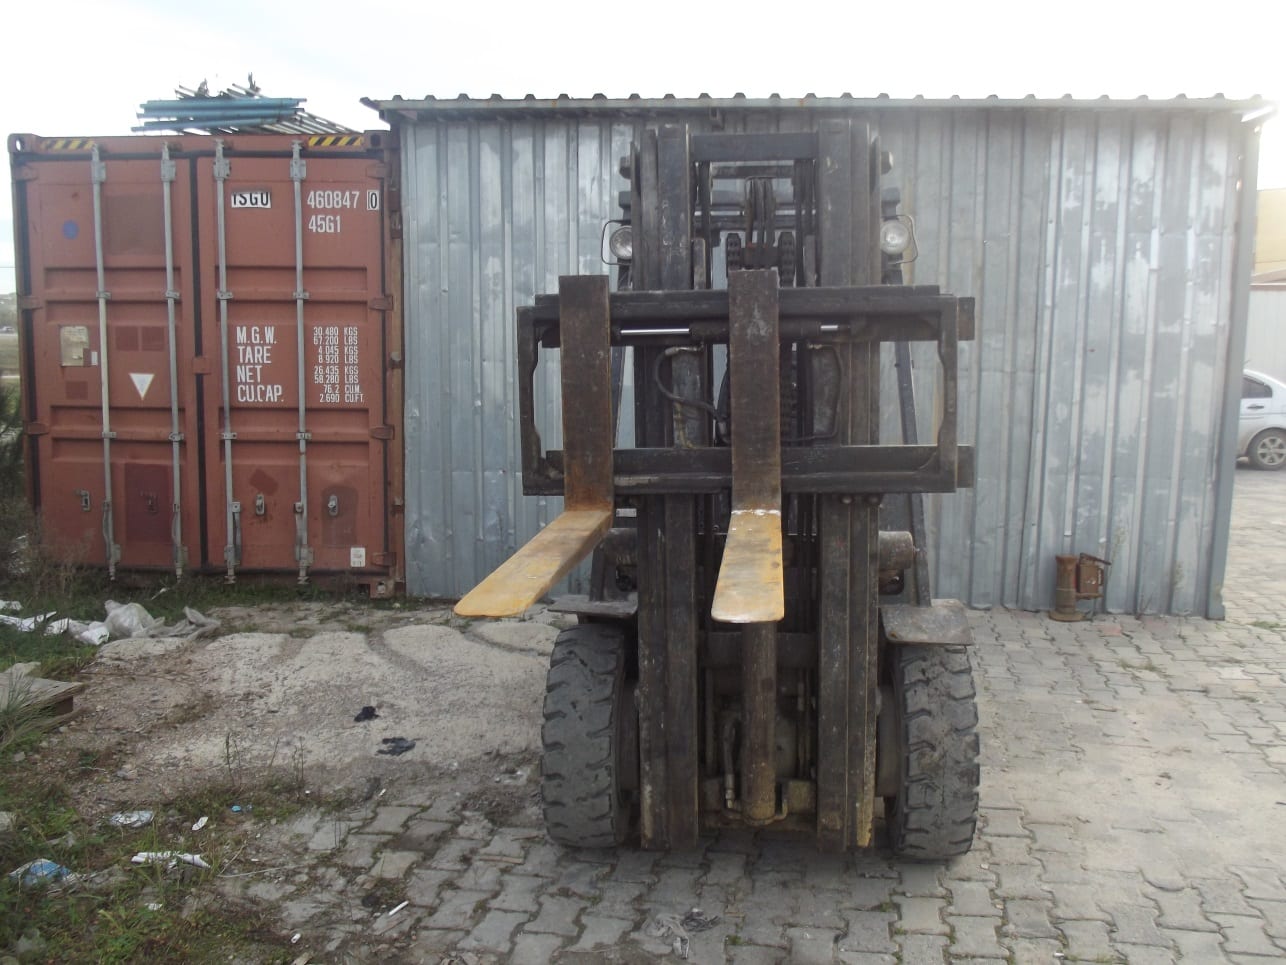 Satılık 3 Ton Kaldırma Kapasiteli Dizel Forklift – Satıldı –